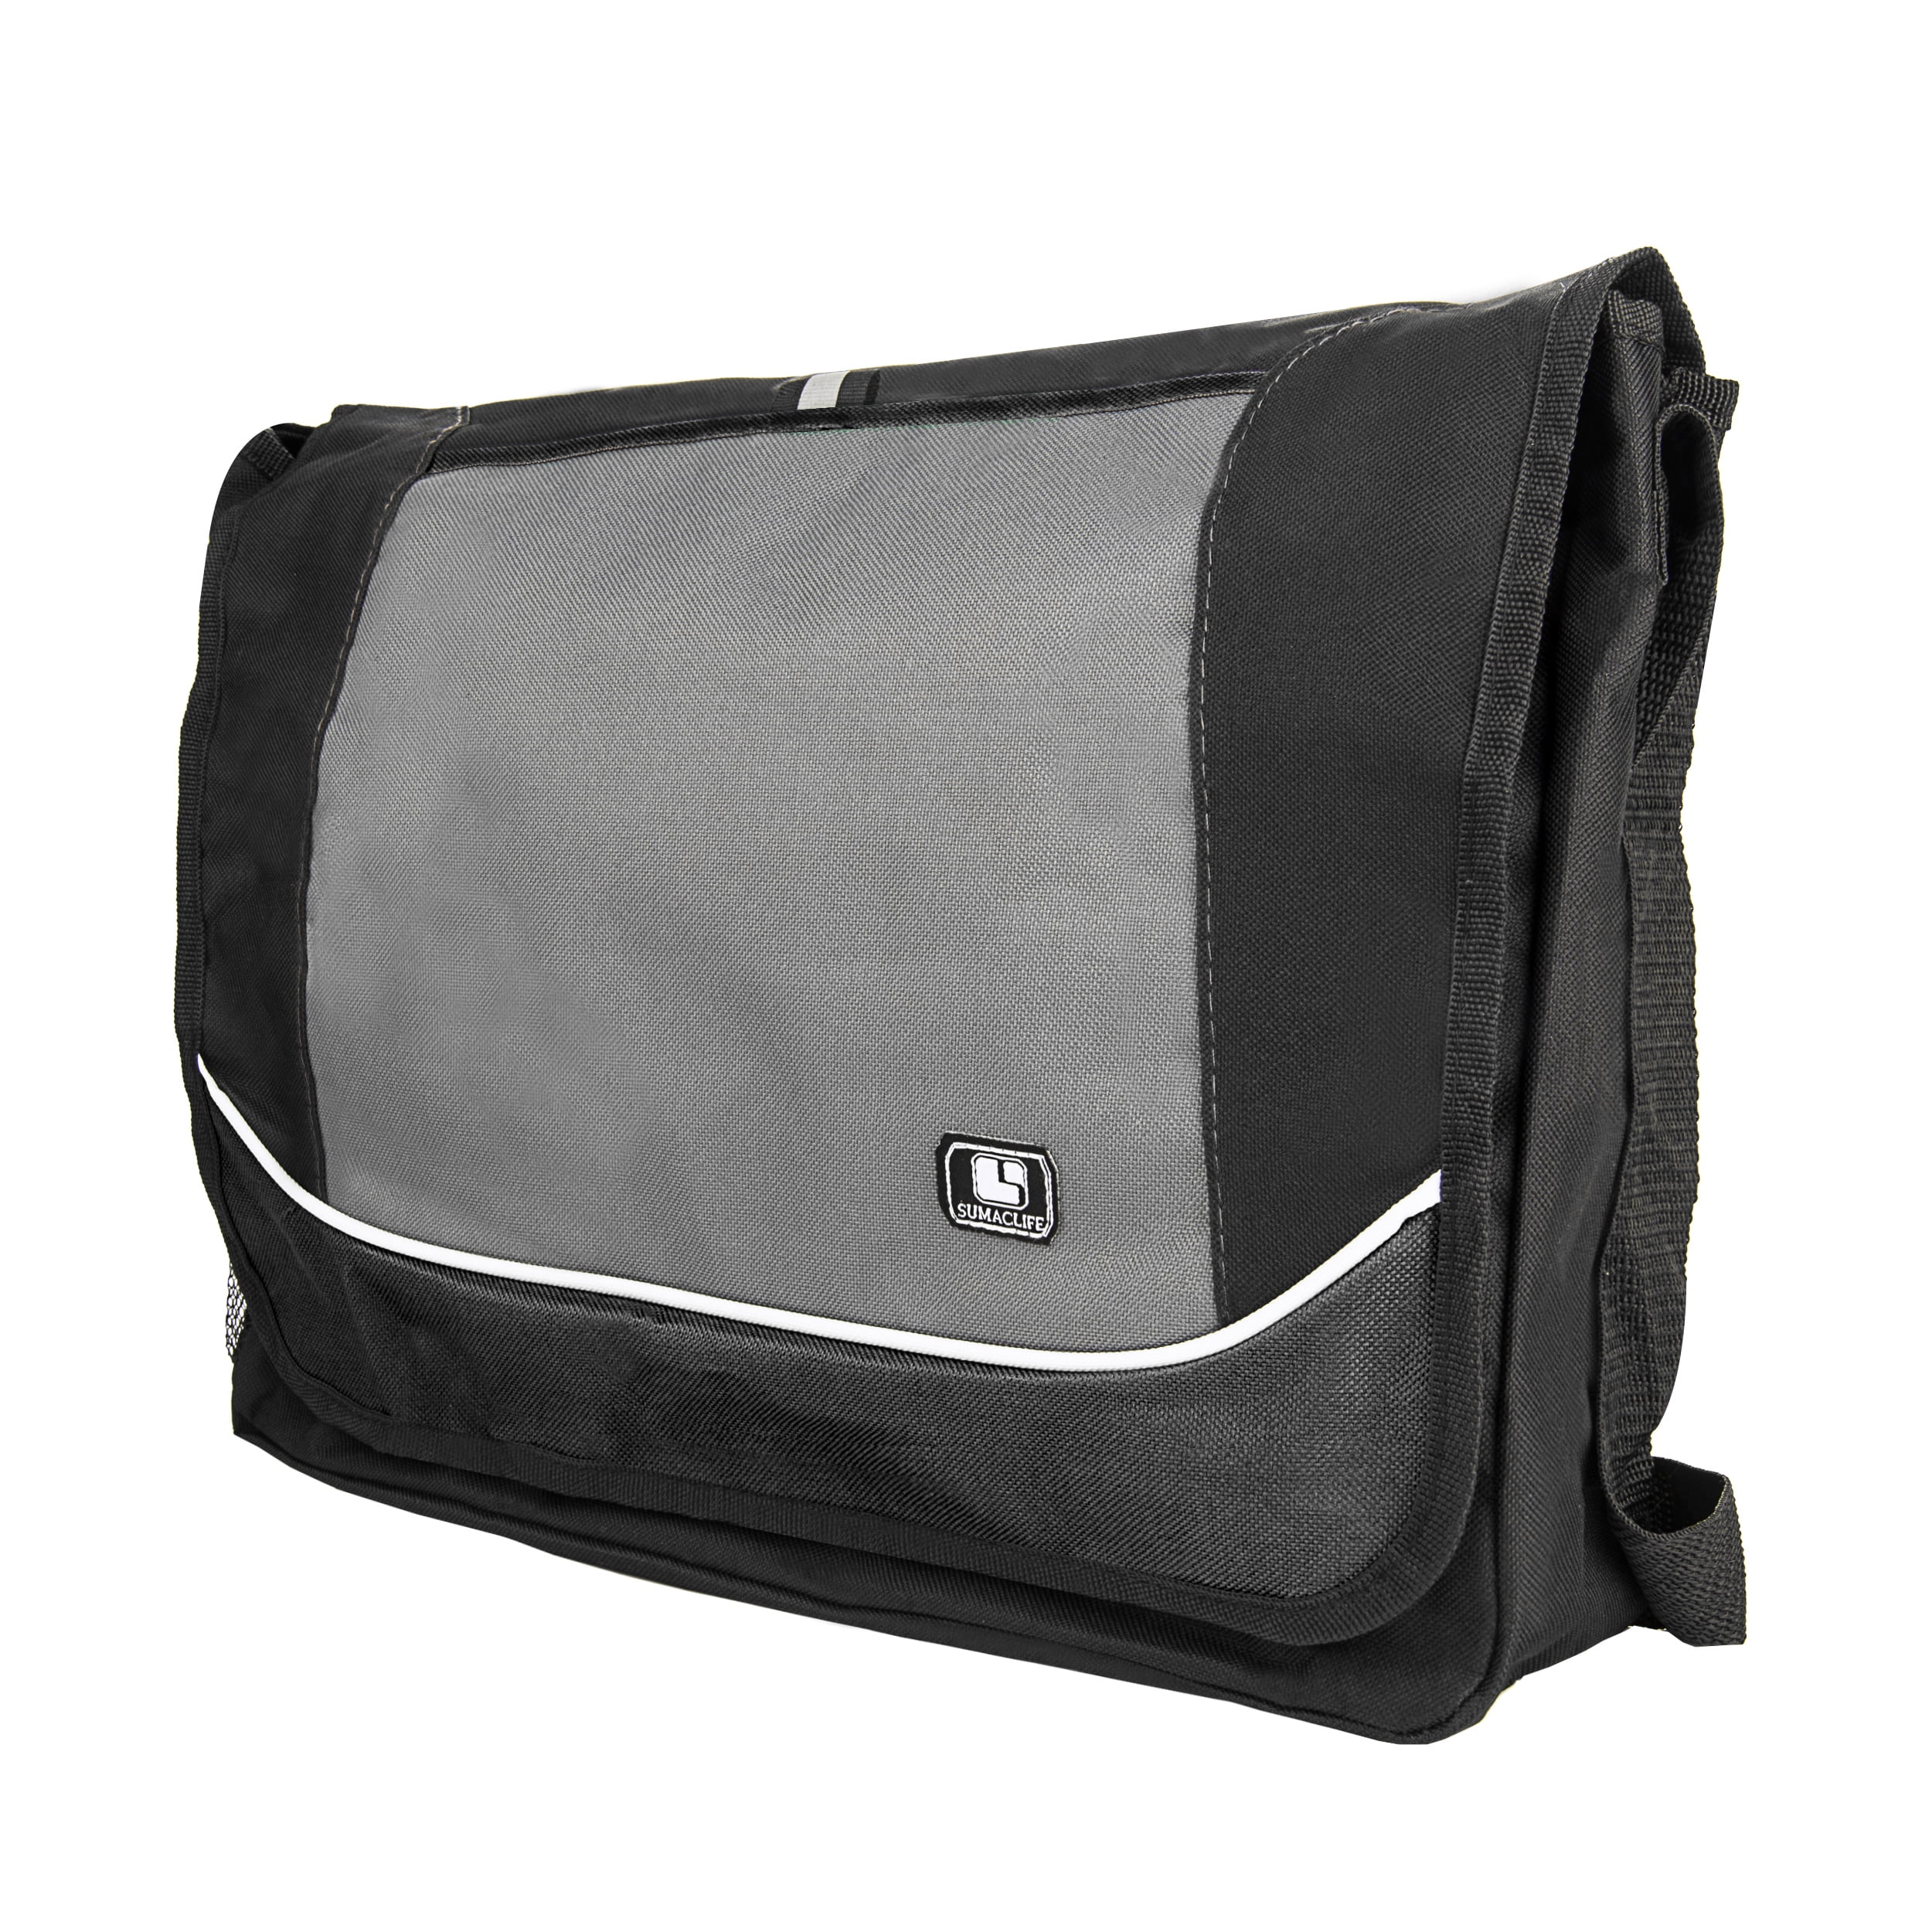 Shoulder Bag Travel Bag School Backpack SumacLife Causal Style Lightweight Canvas Laptop Bag 